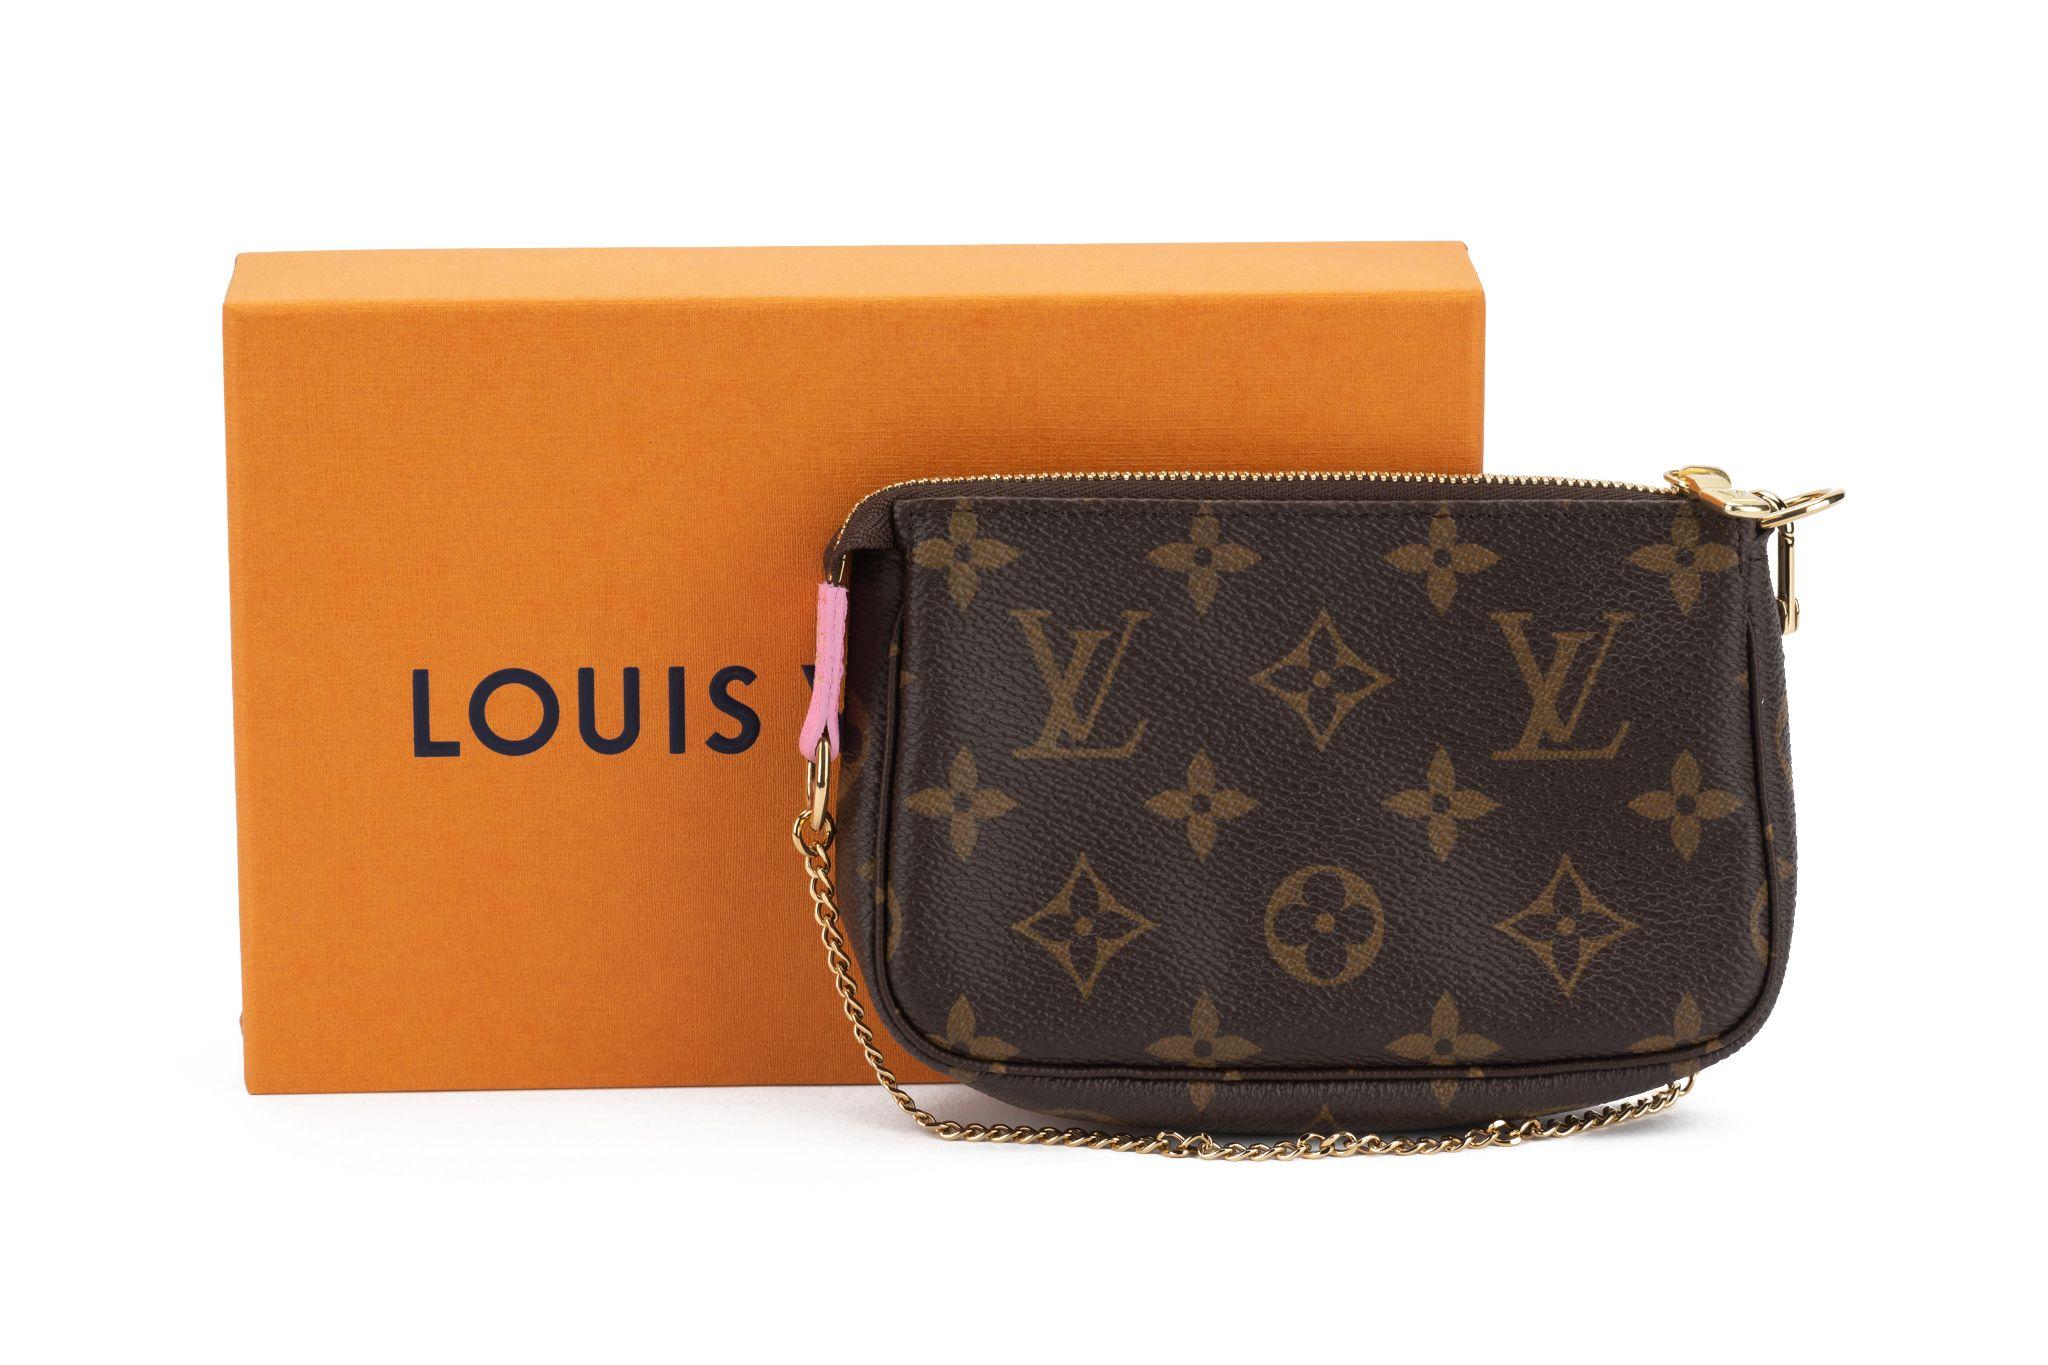 Louis Vuitton Mini Pochette Accessoires appartient à la collection Vivienne Holidays 2022. Il est neuf et est livré avec sa housse et sa boîte d'origine.